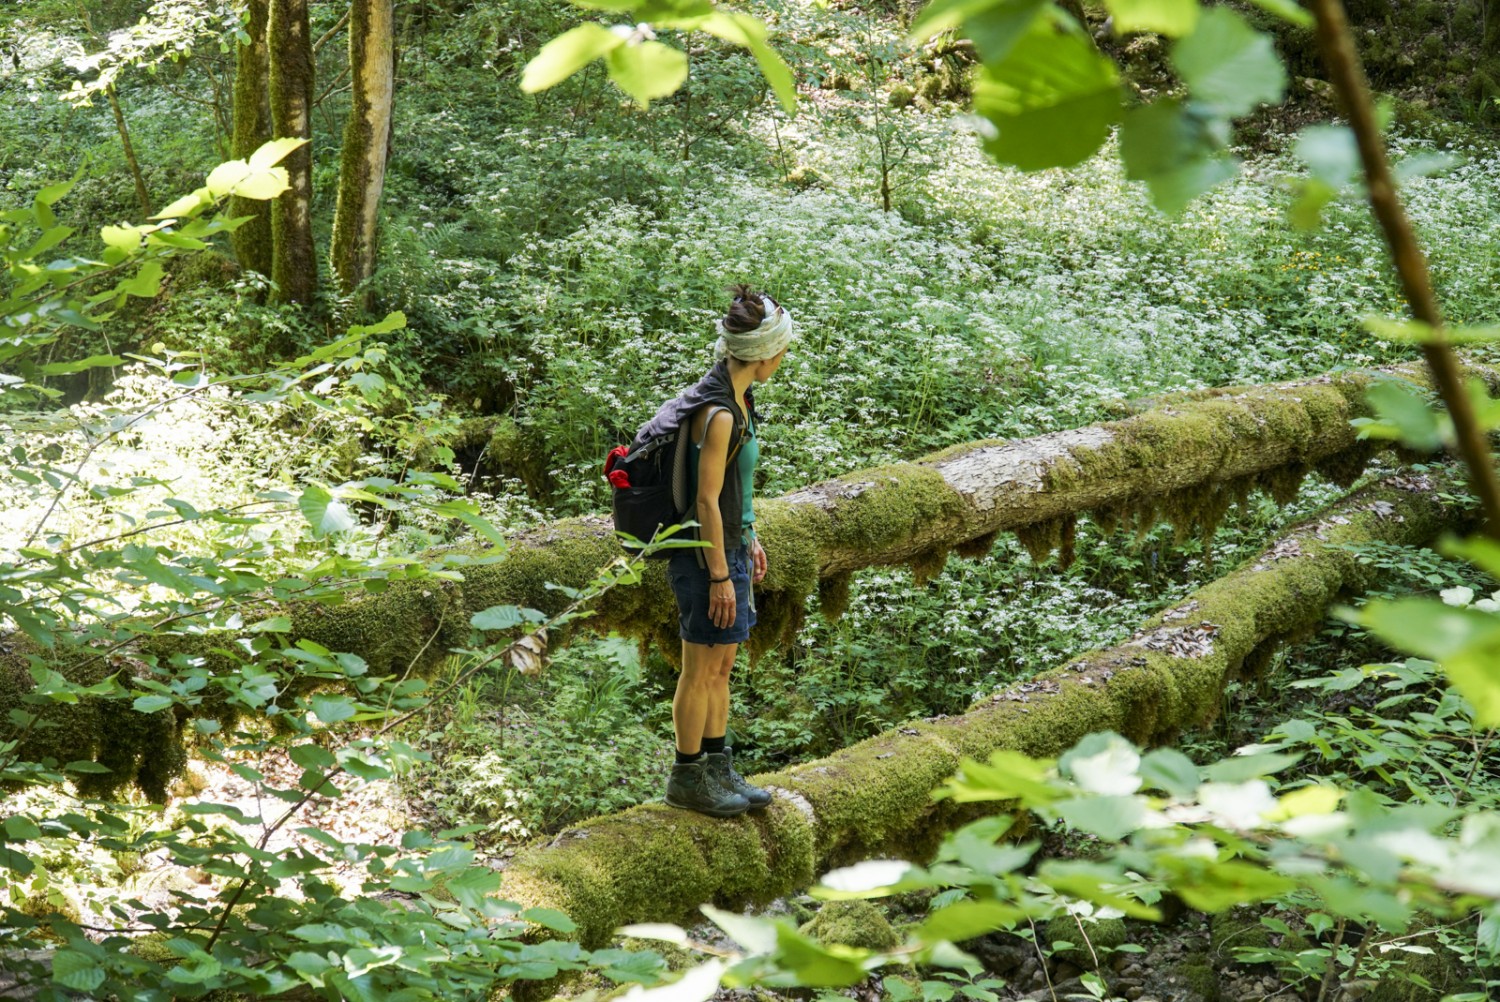 Aussi envoûtante que la forêt vierge: la combe de Biaufond est peuplée de vieux bois recouverts de mousse. Photo: Mia Hofmann